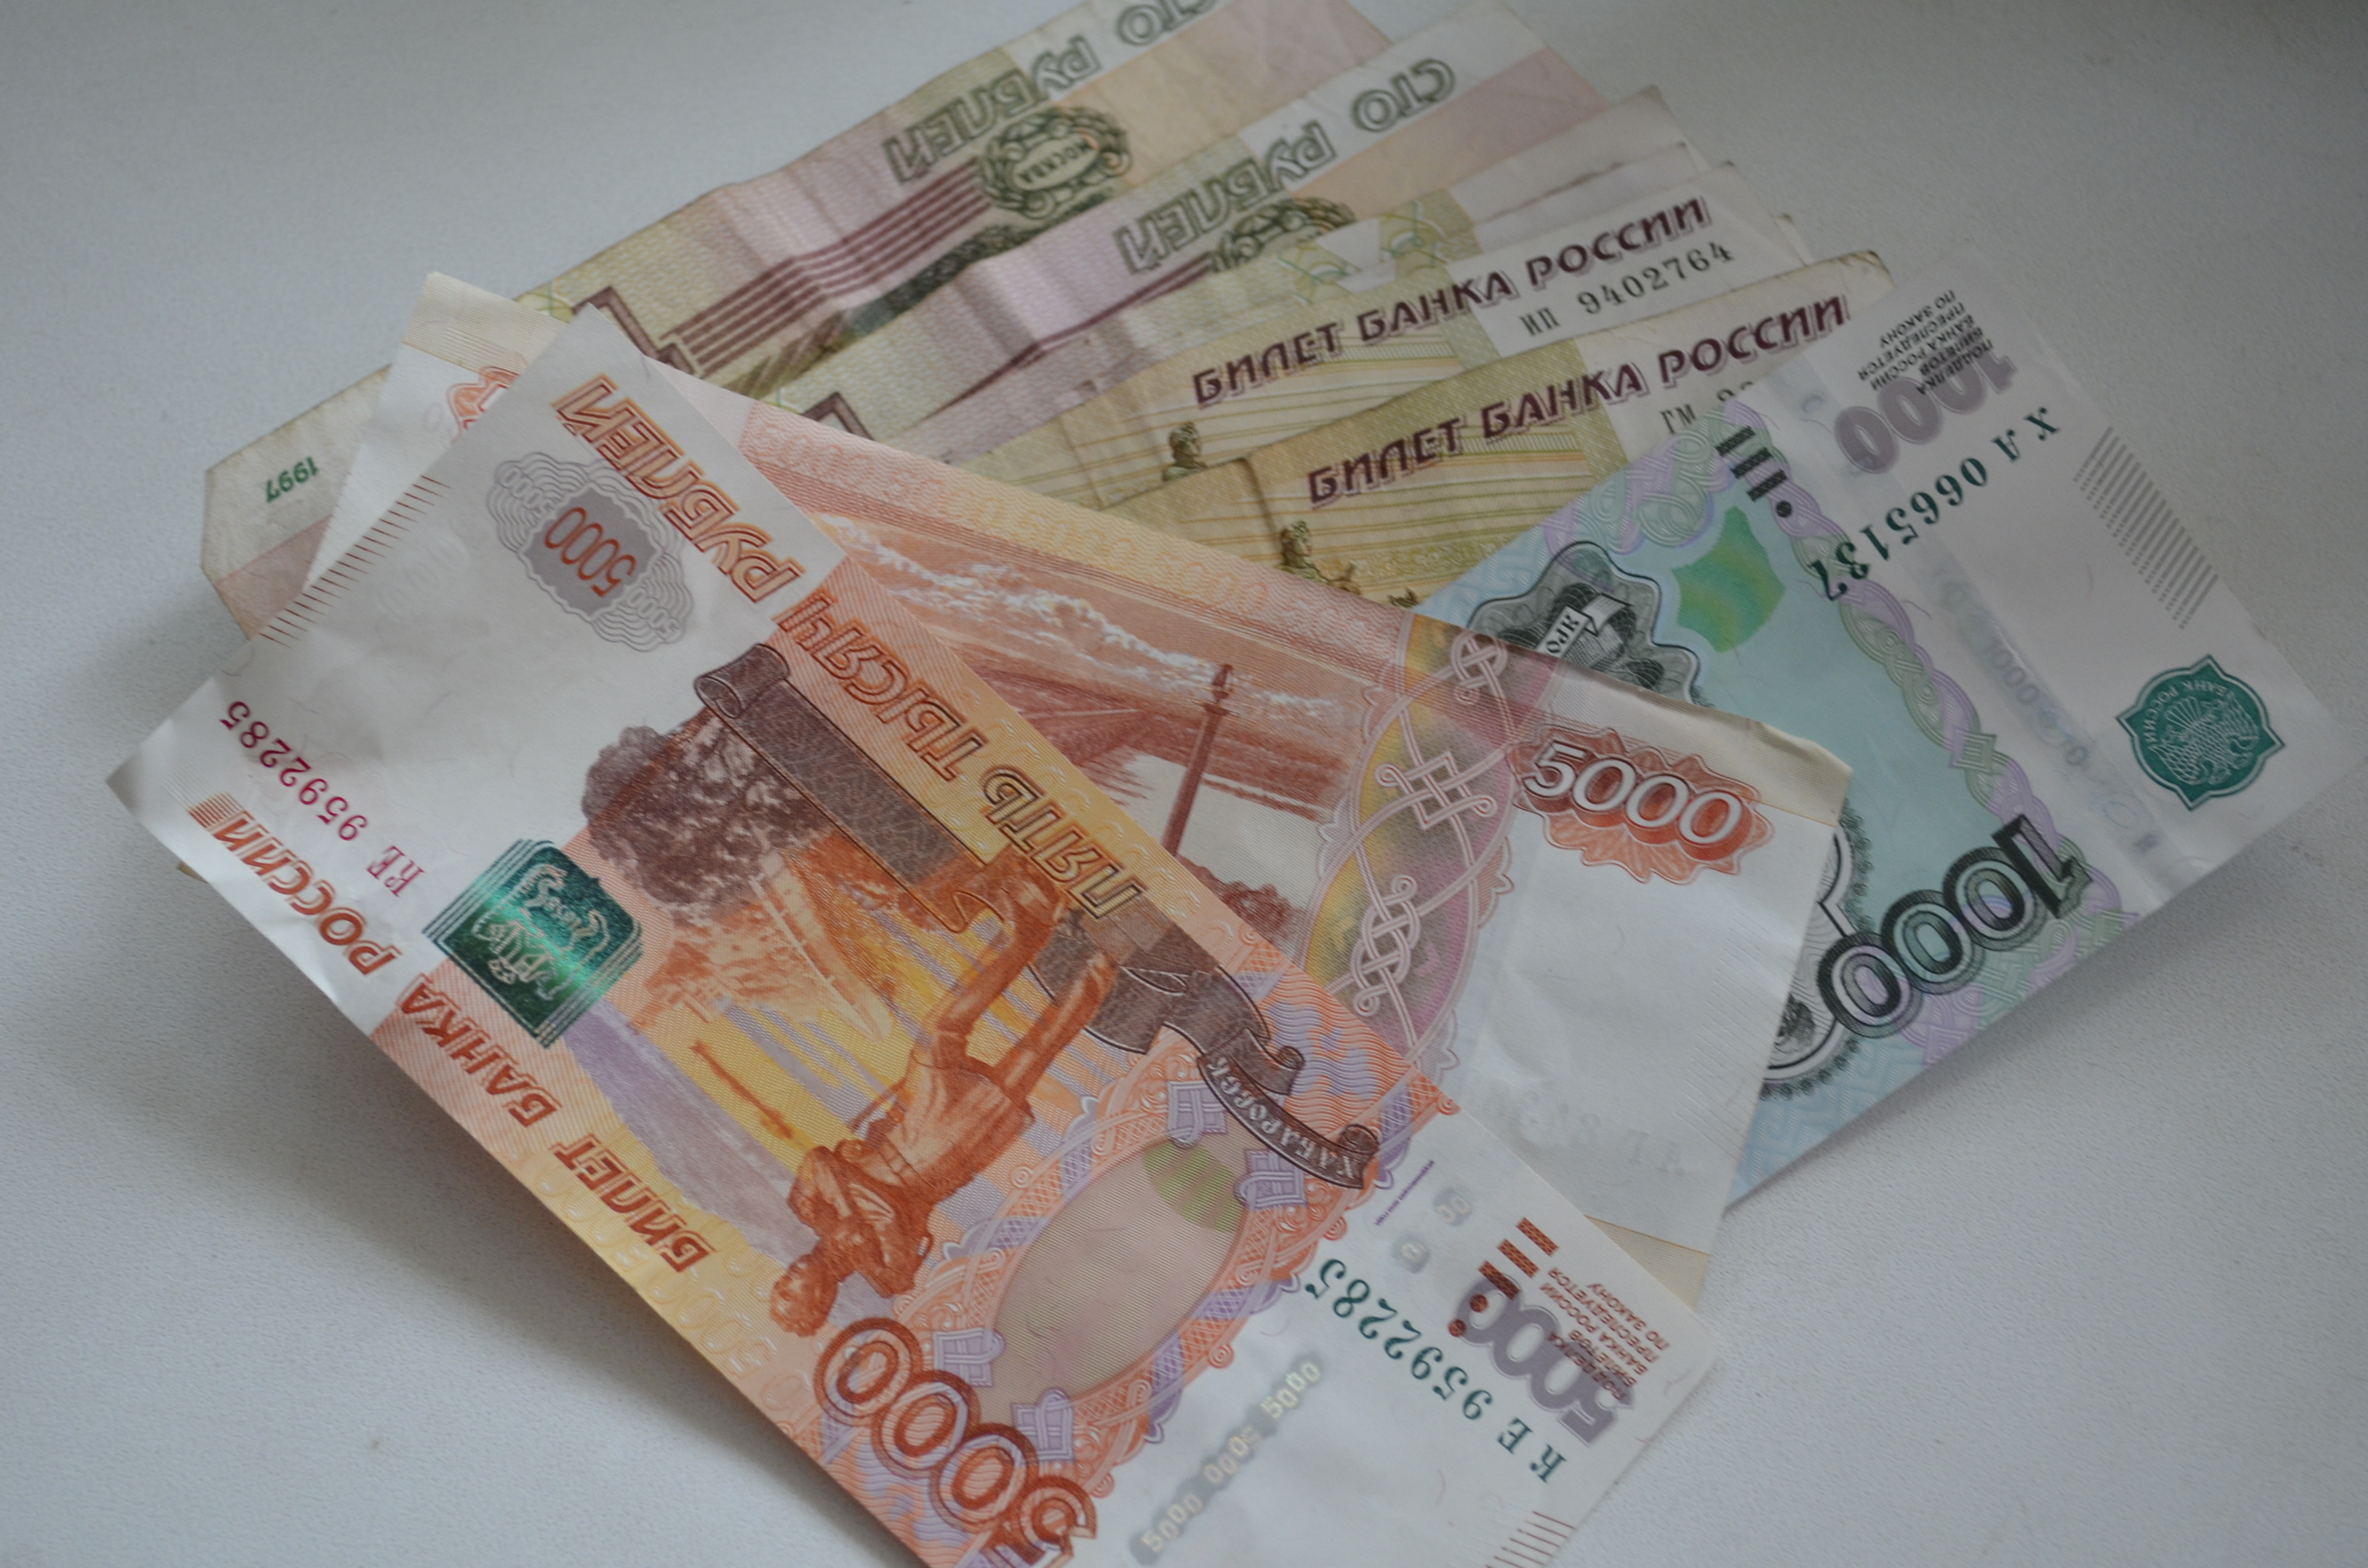 Выплата 5 000 рублей. Деньги разложенные на столе 2 тысячи рублей.